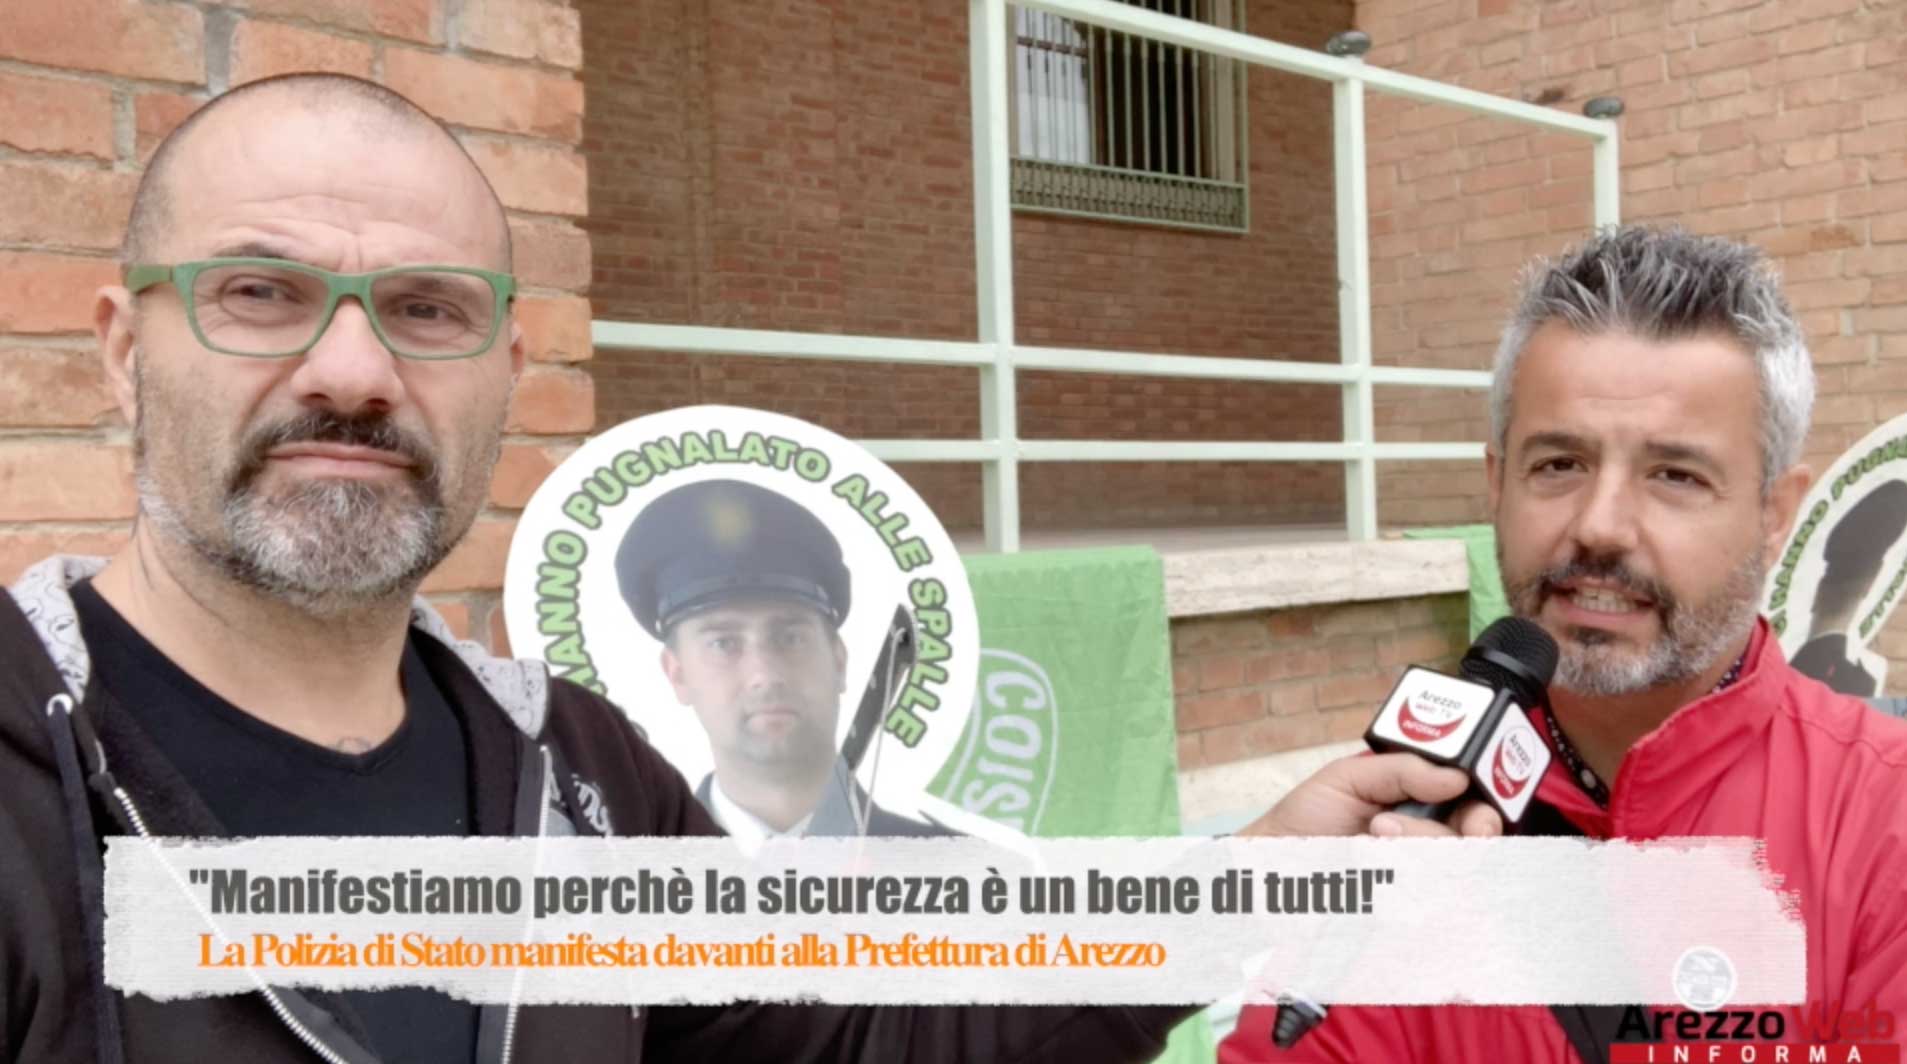 La Polizia di Stato manifesta davanti alla Prefettura di Arezzo per una maggior tutela “Perchè la sicurezza è un bene di tutti!”